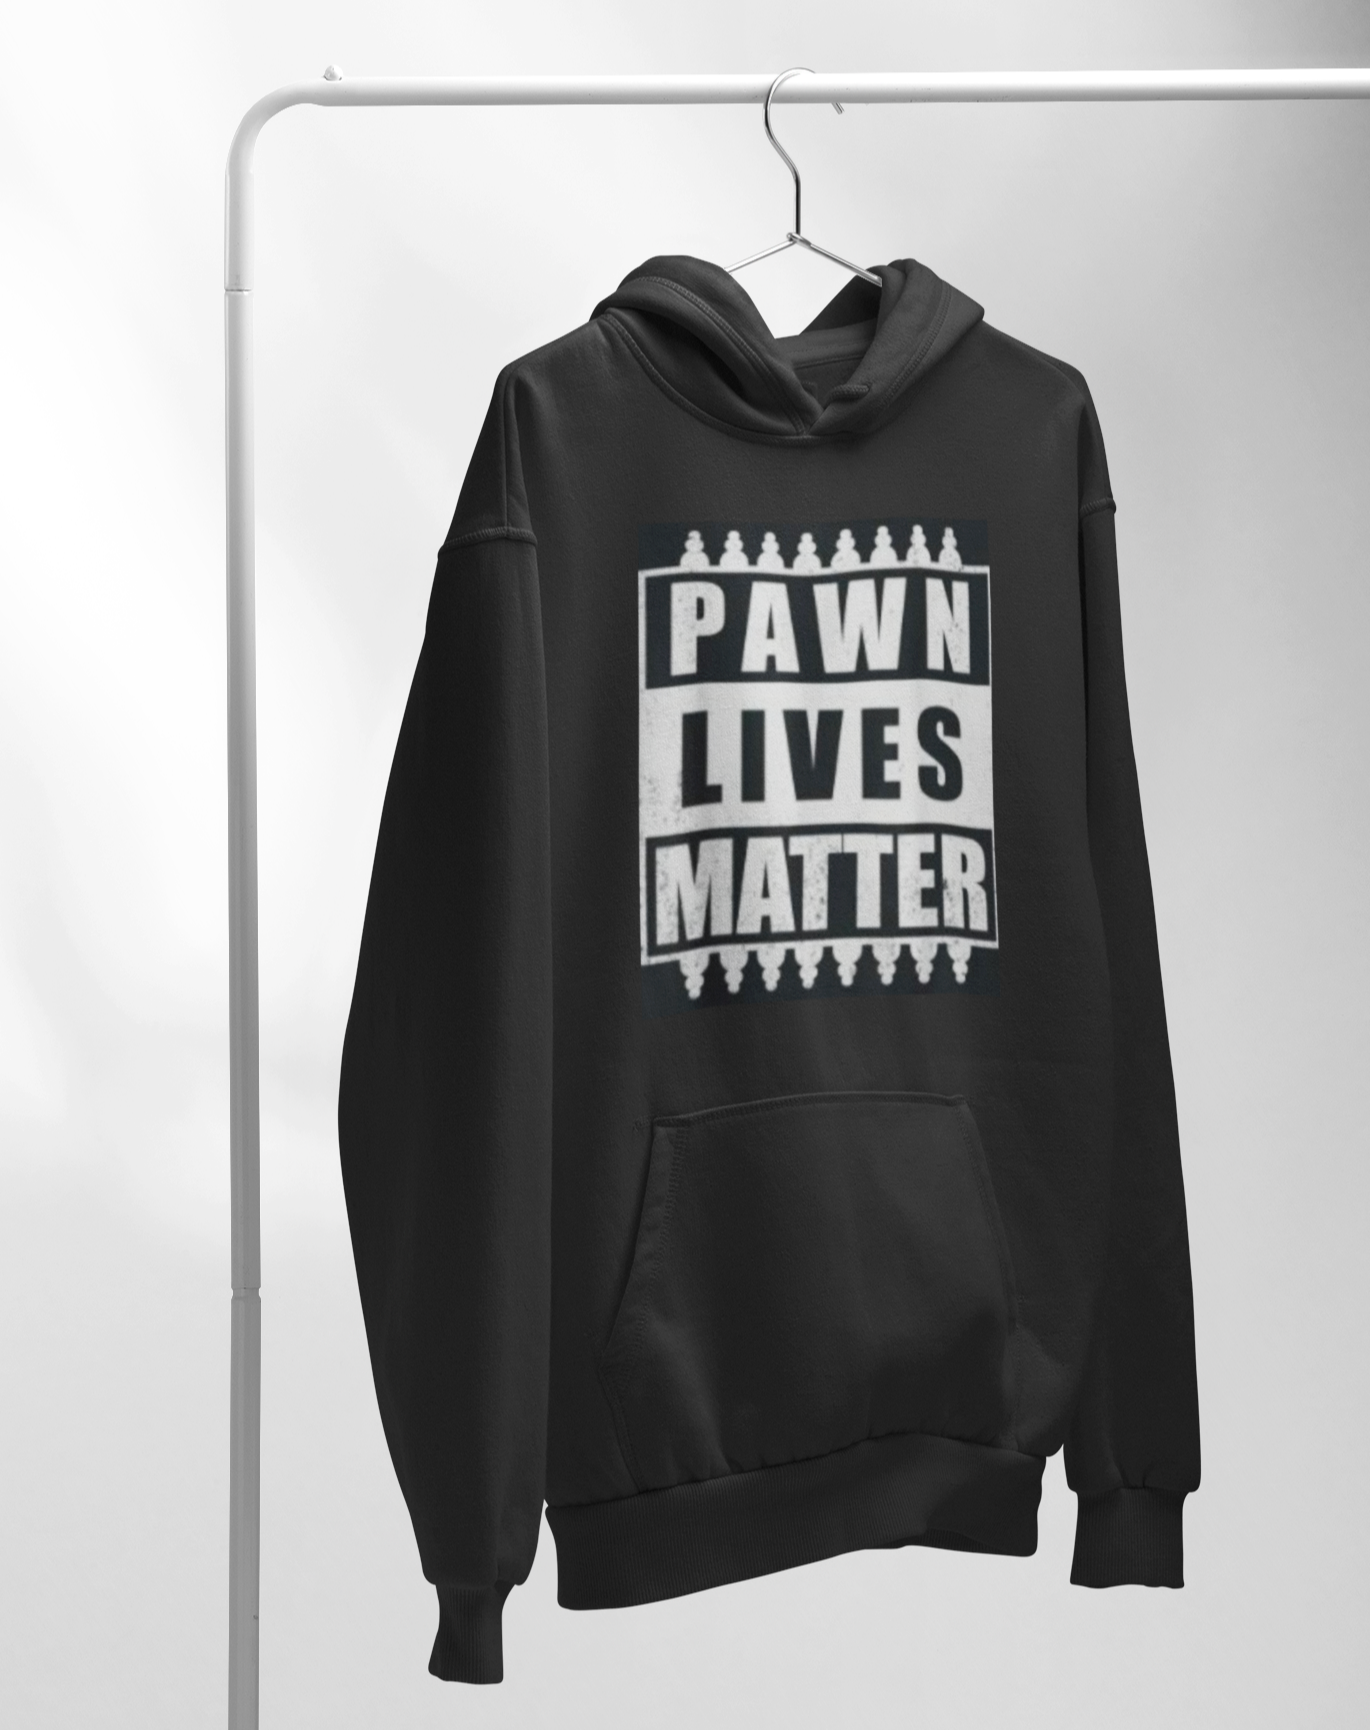 Pawn lives matter